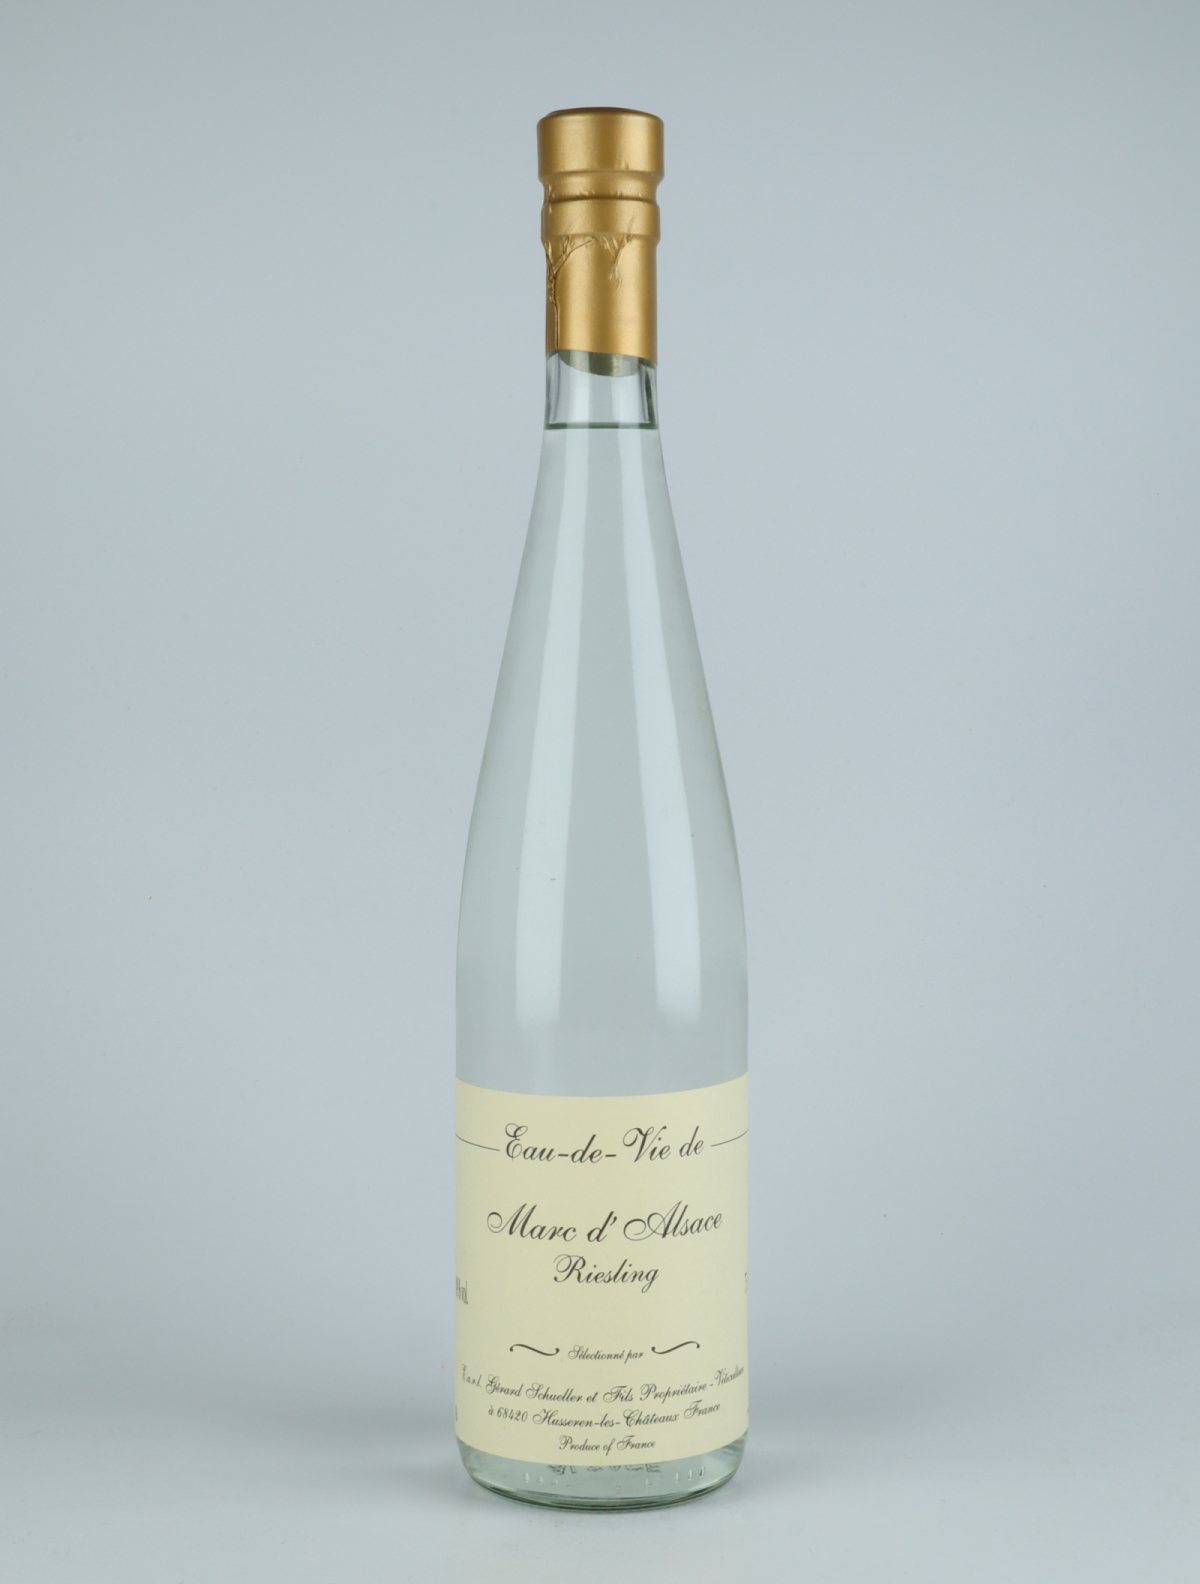 En flaske N.V. Eau de Vie de Marc de Riesling Spiritus fra Gérard Schueller, Alsace i Frankrig